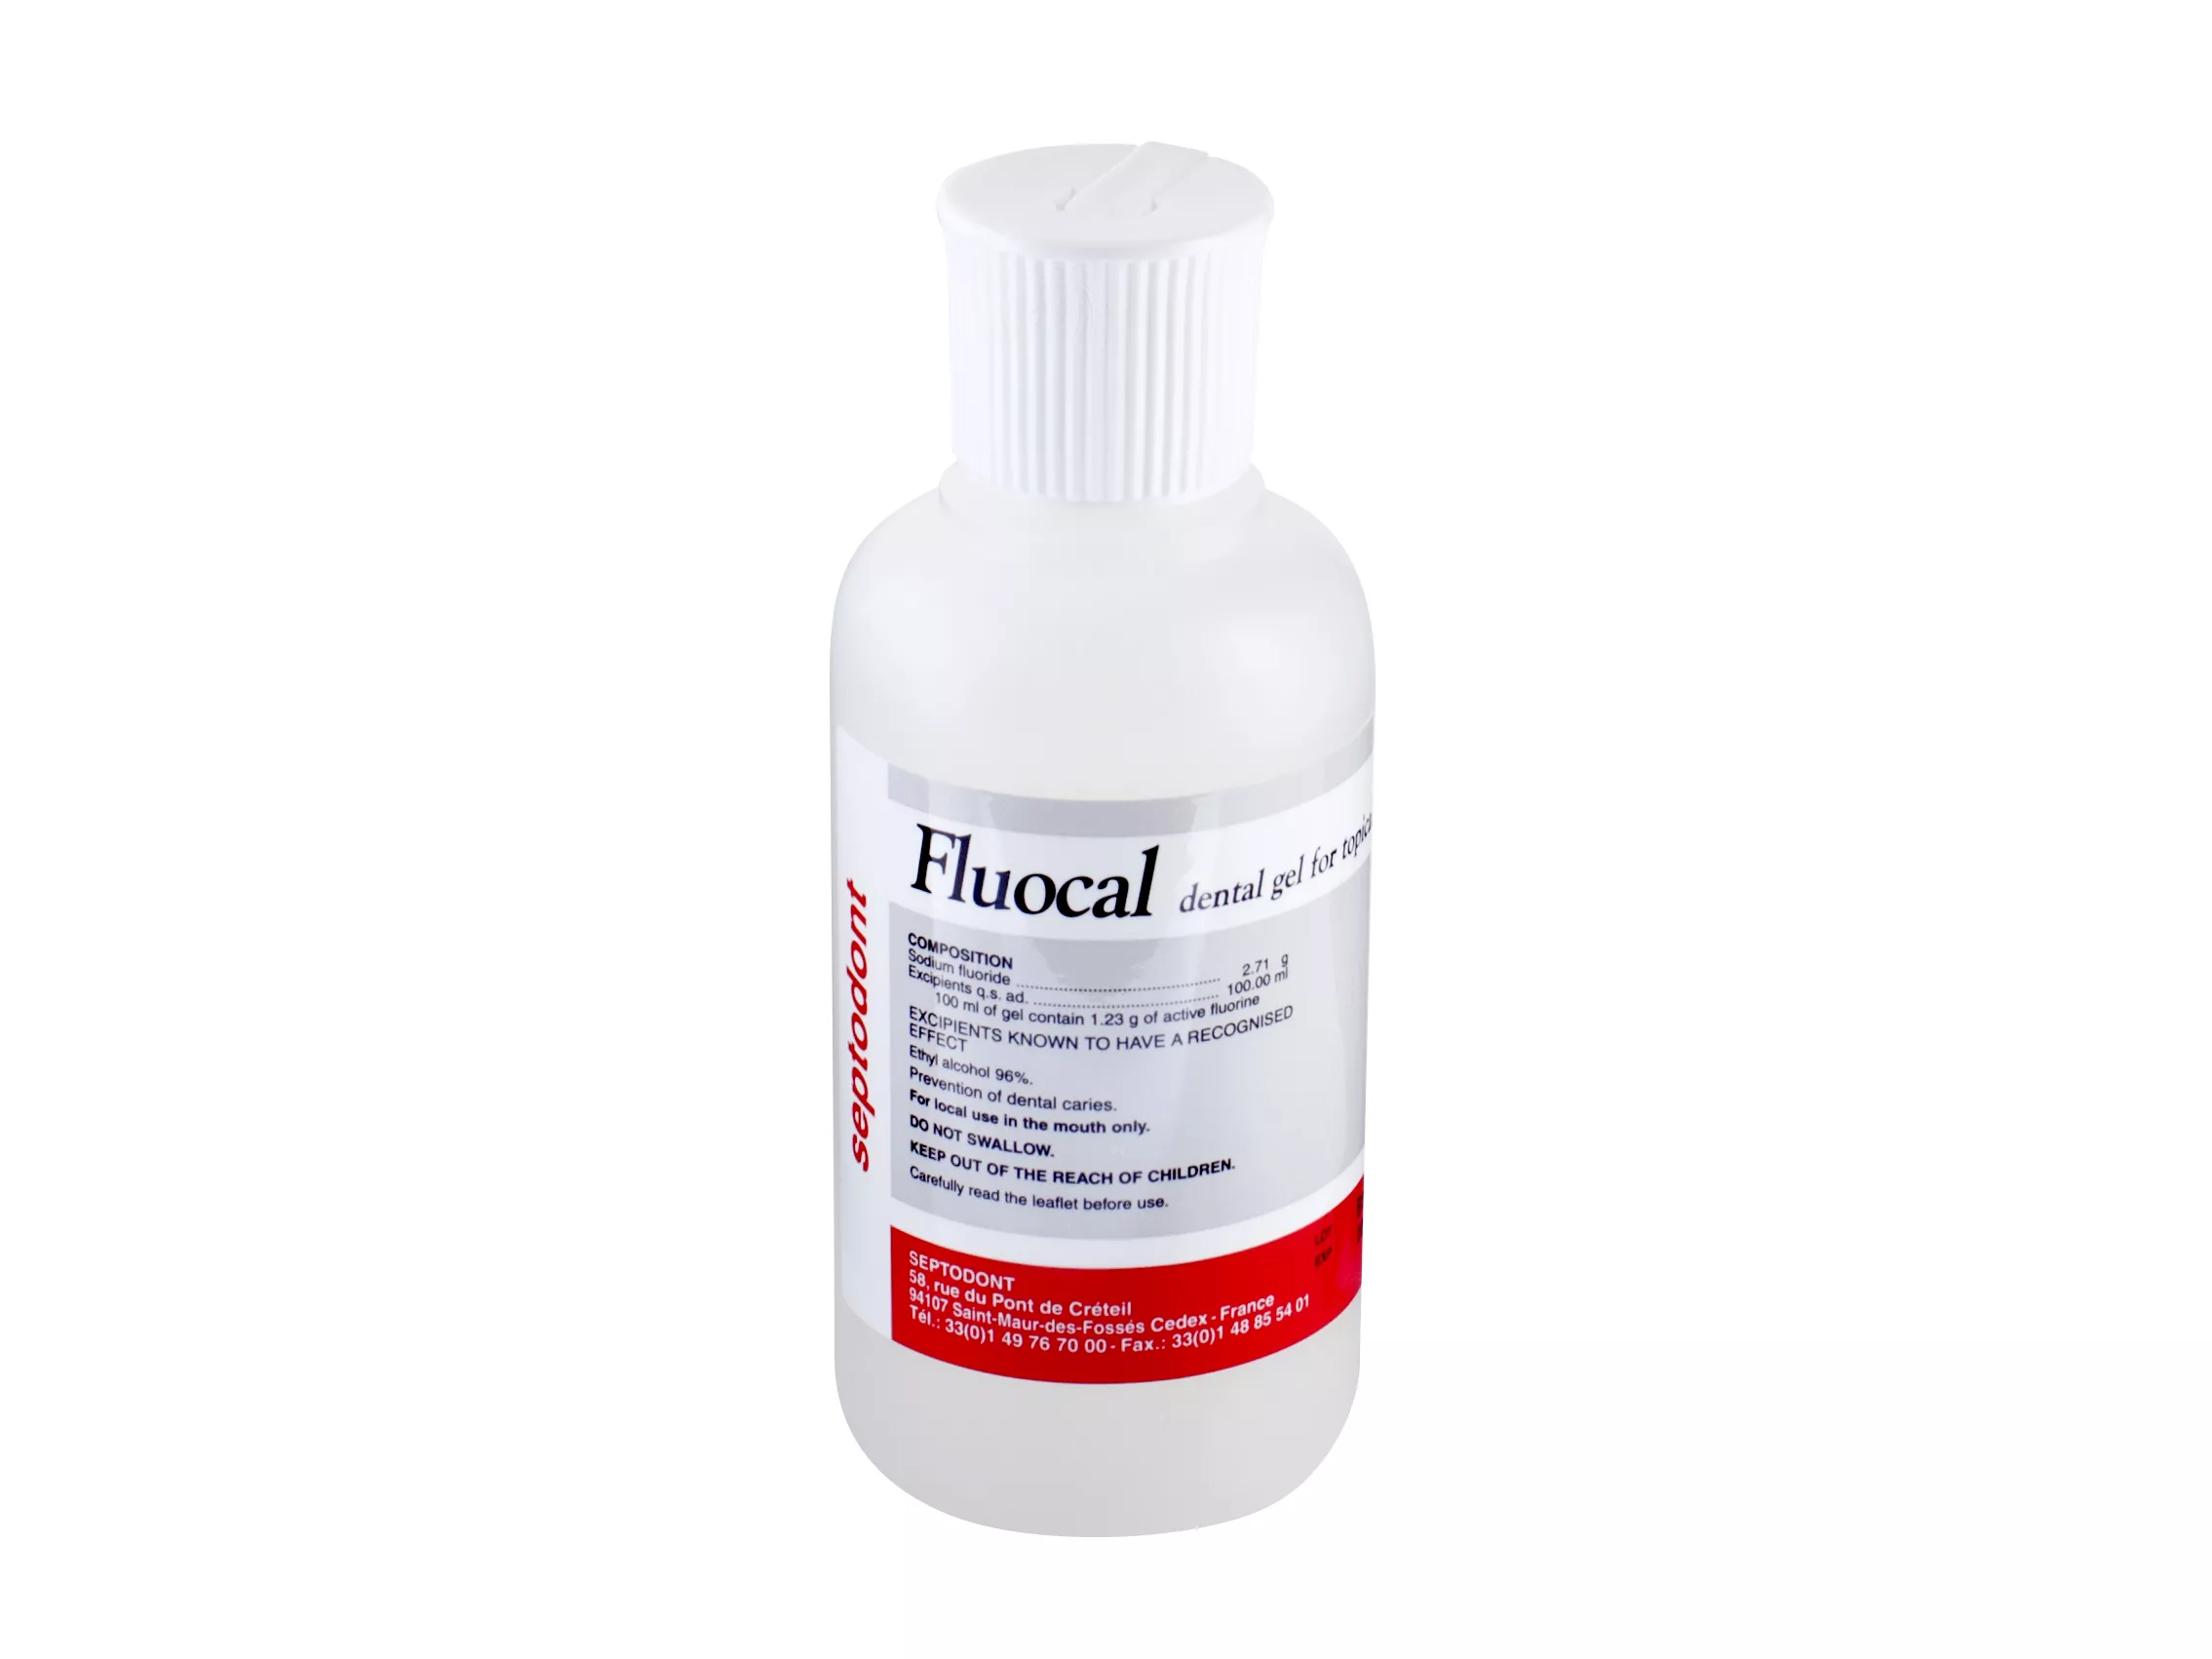 Fluocal gel